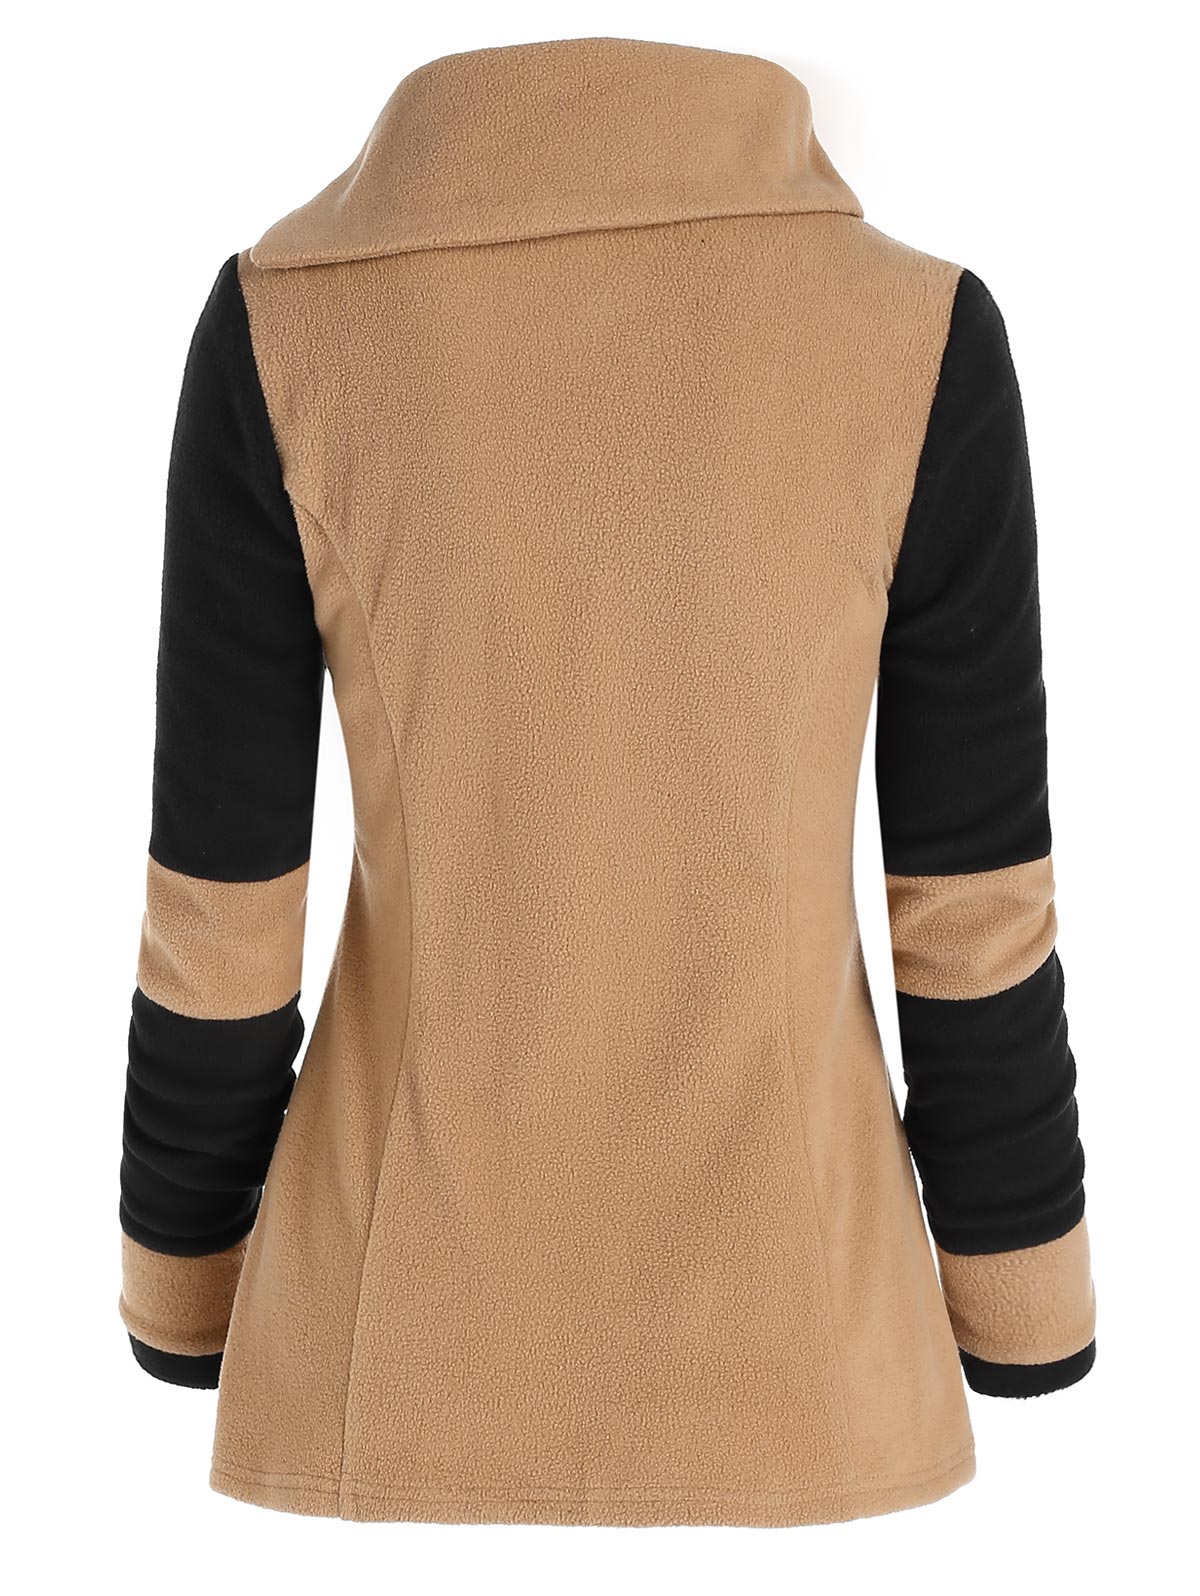 come4buy.com-Fleece Jacket teljes ujjú meleg kabát